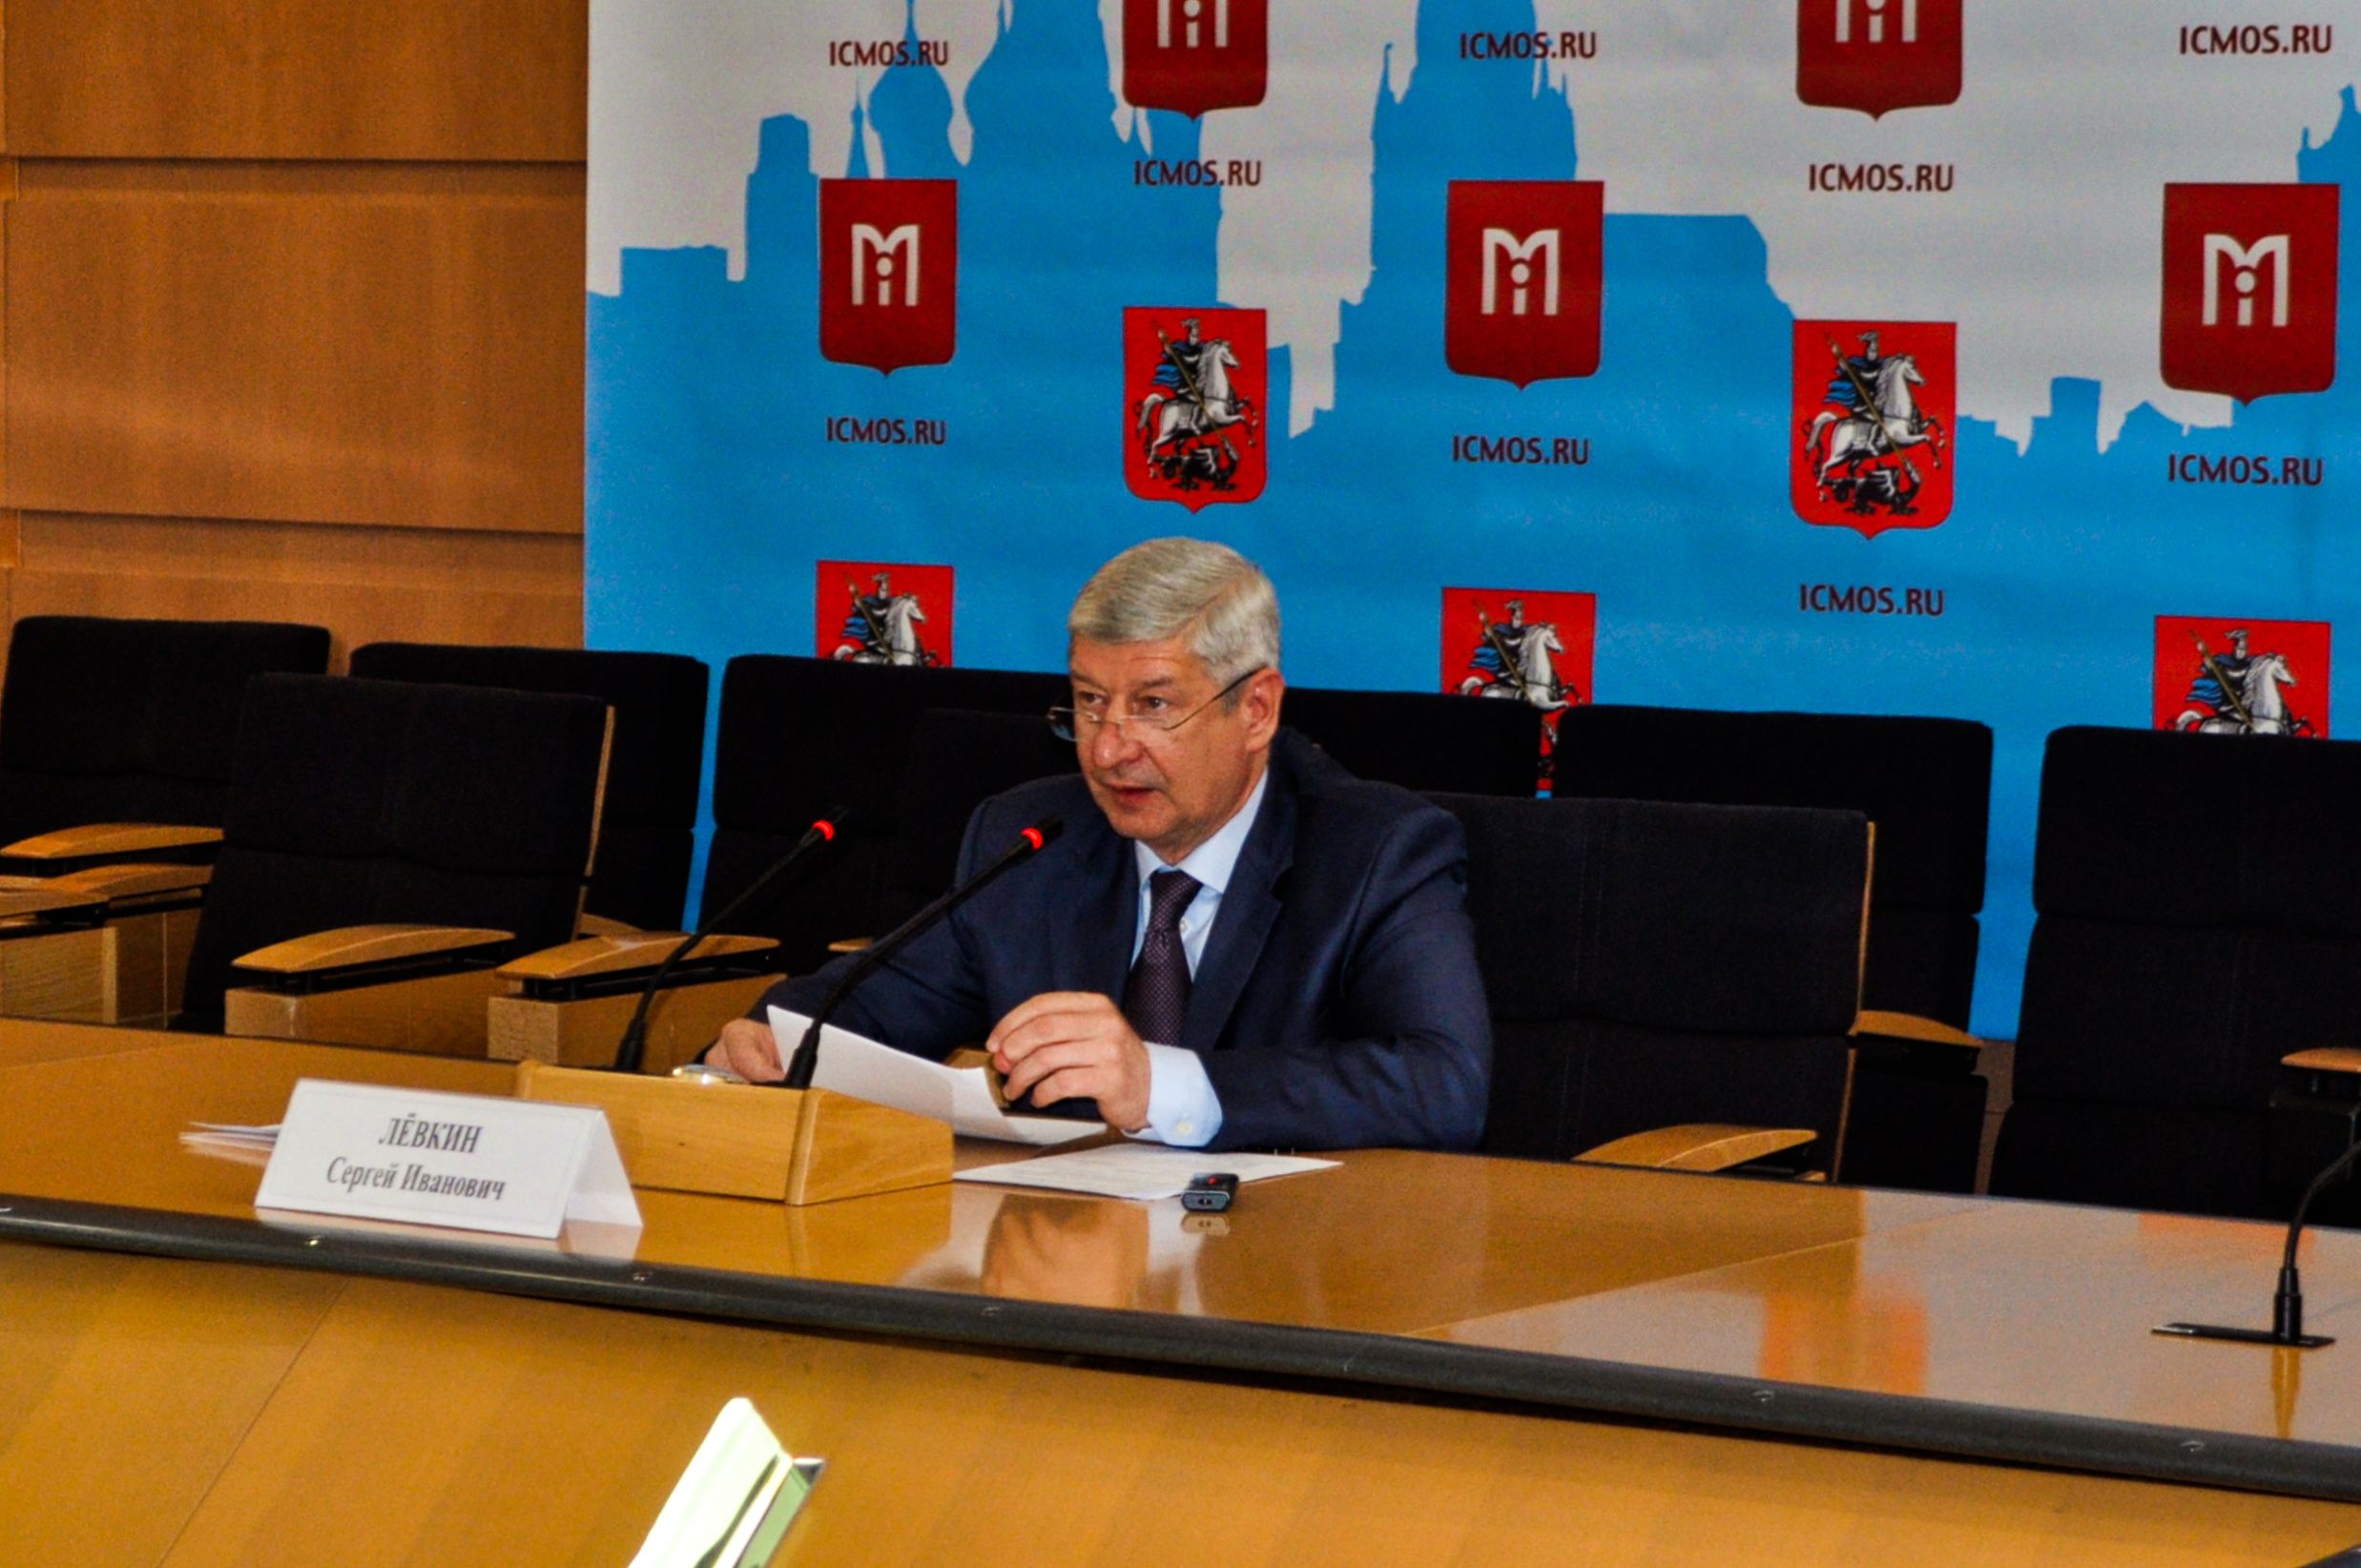 Промежуточные итоги программы развития территории Москвы озвучили на пресс-конференции. Фото: Никита Нестеров